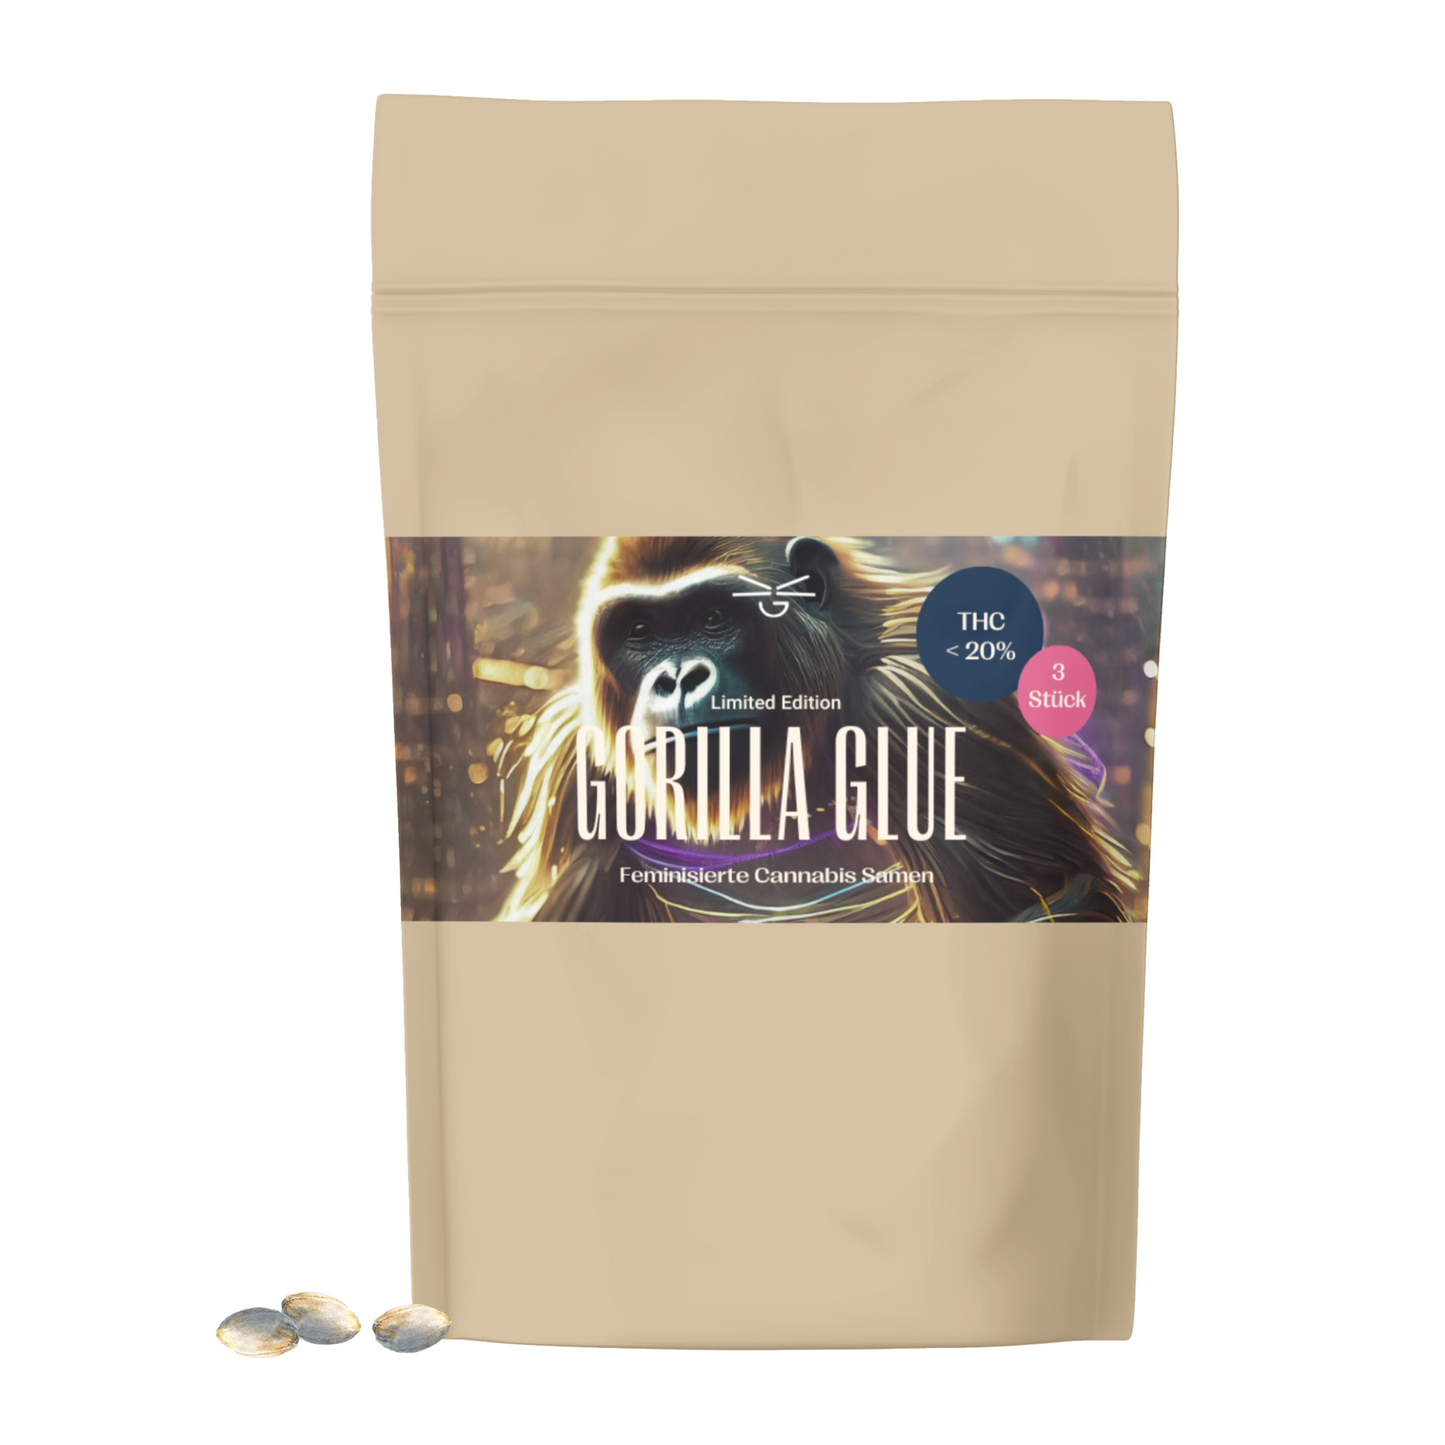 Gorilla Glue Cannabis Samen (feminisiert)